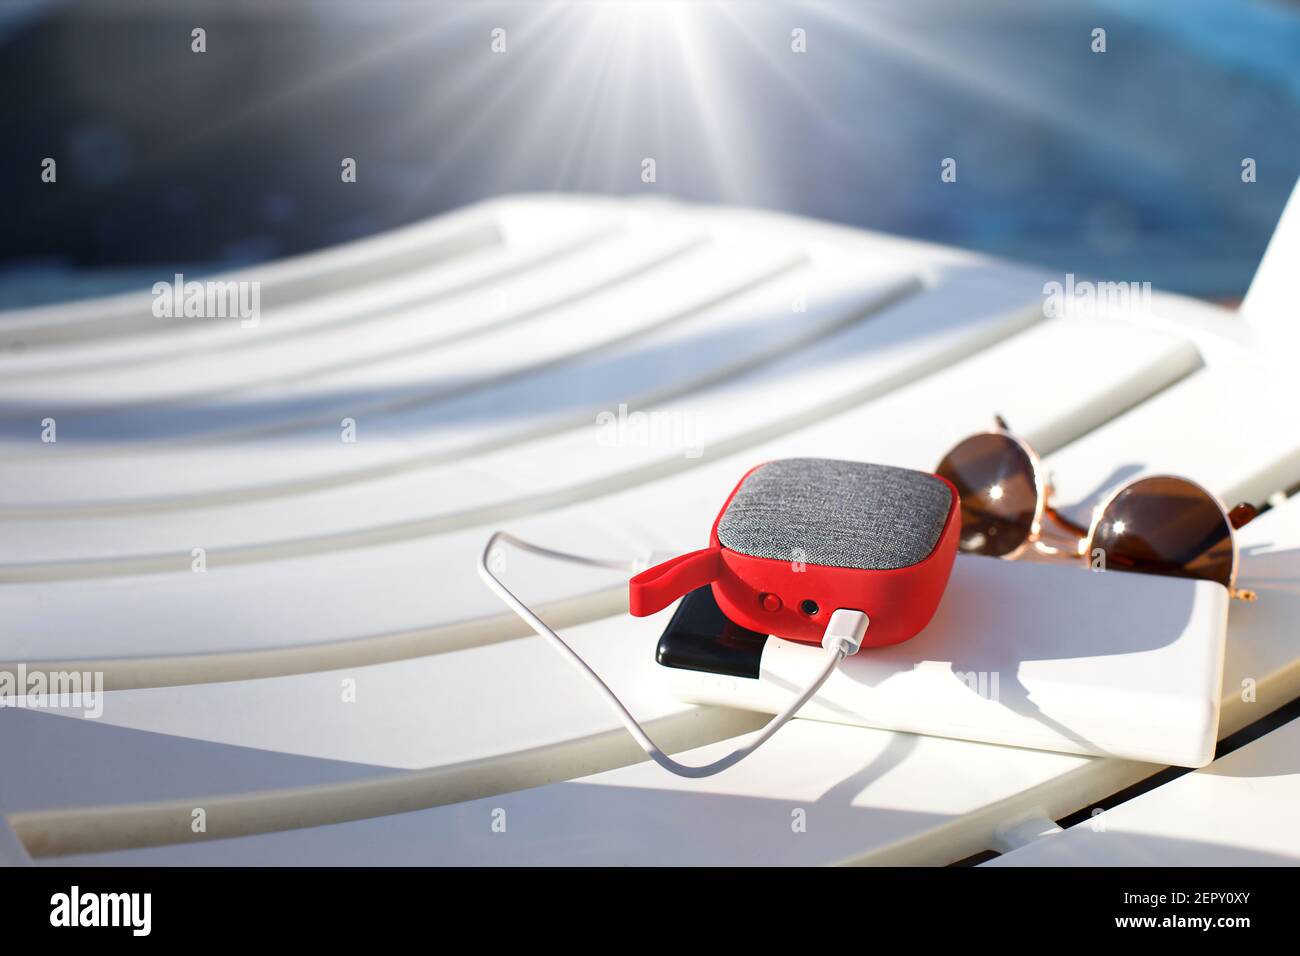 El altavoz portátil de música roja se carga desde la fuente de alimentación  a través de usb en una silla de cubierta cerca de la piscina. El concepto  está siempre en contacto,